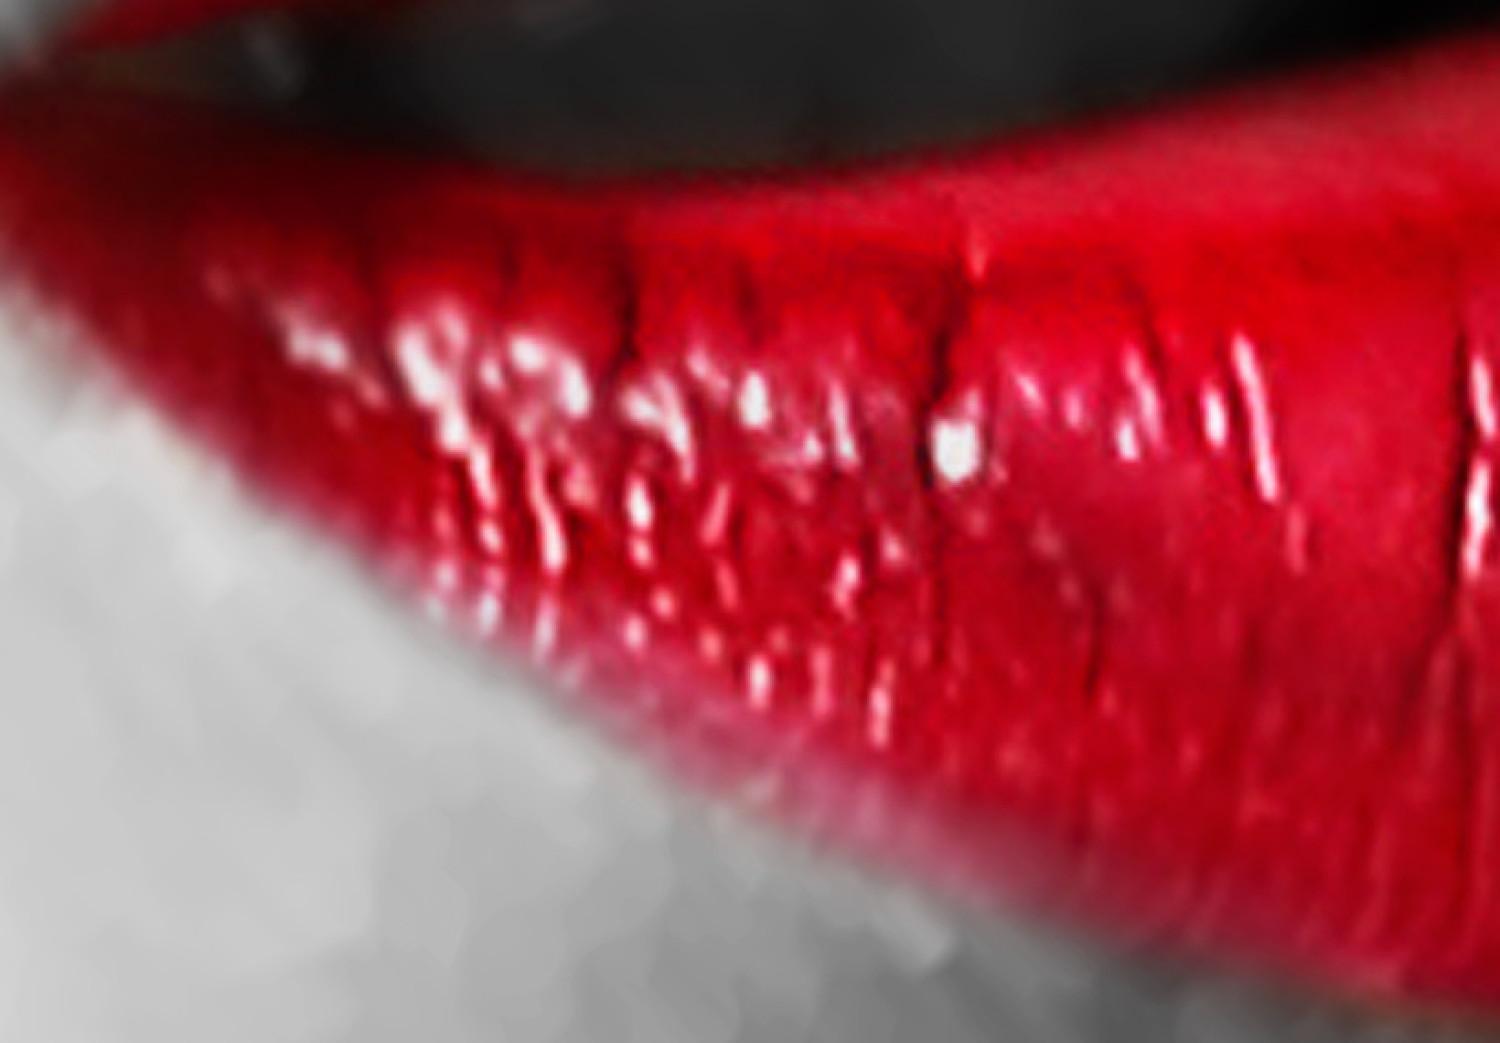 Cuadro decorativo Hot lips